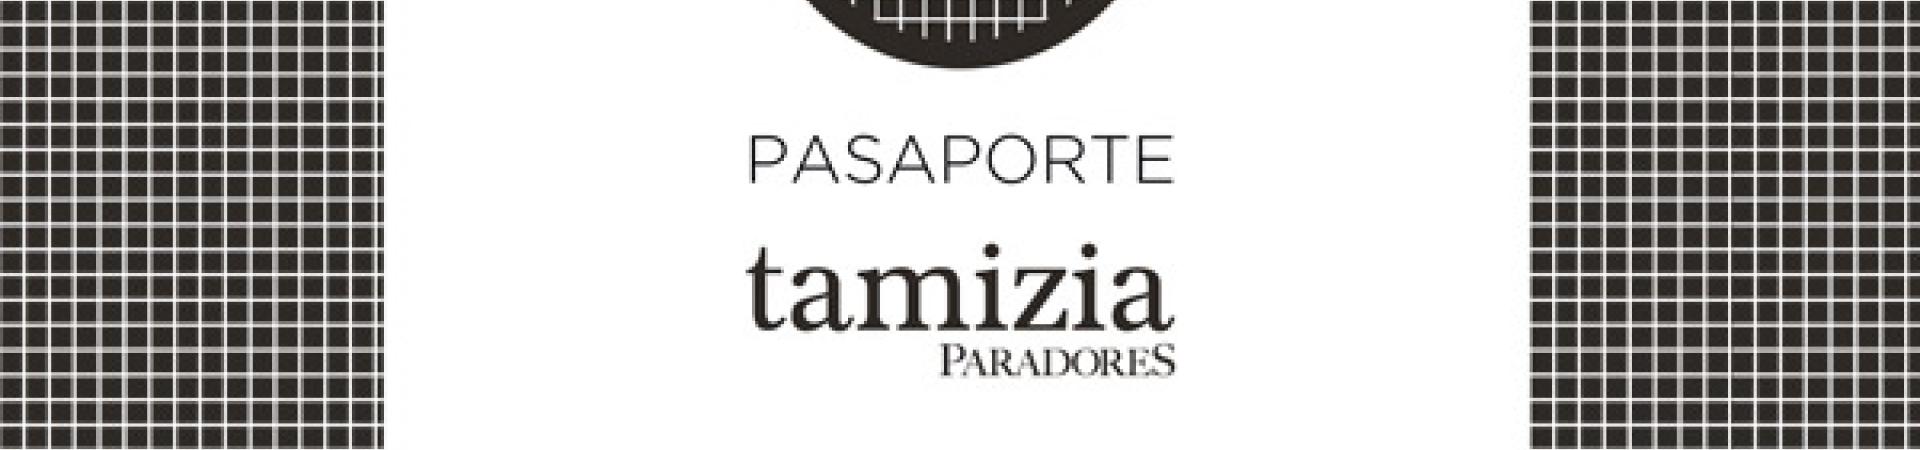 pasaporte_tamizia.jpg